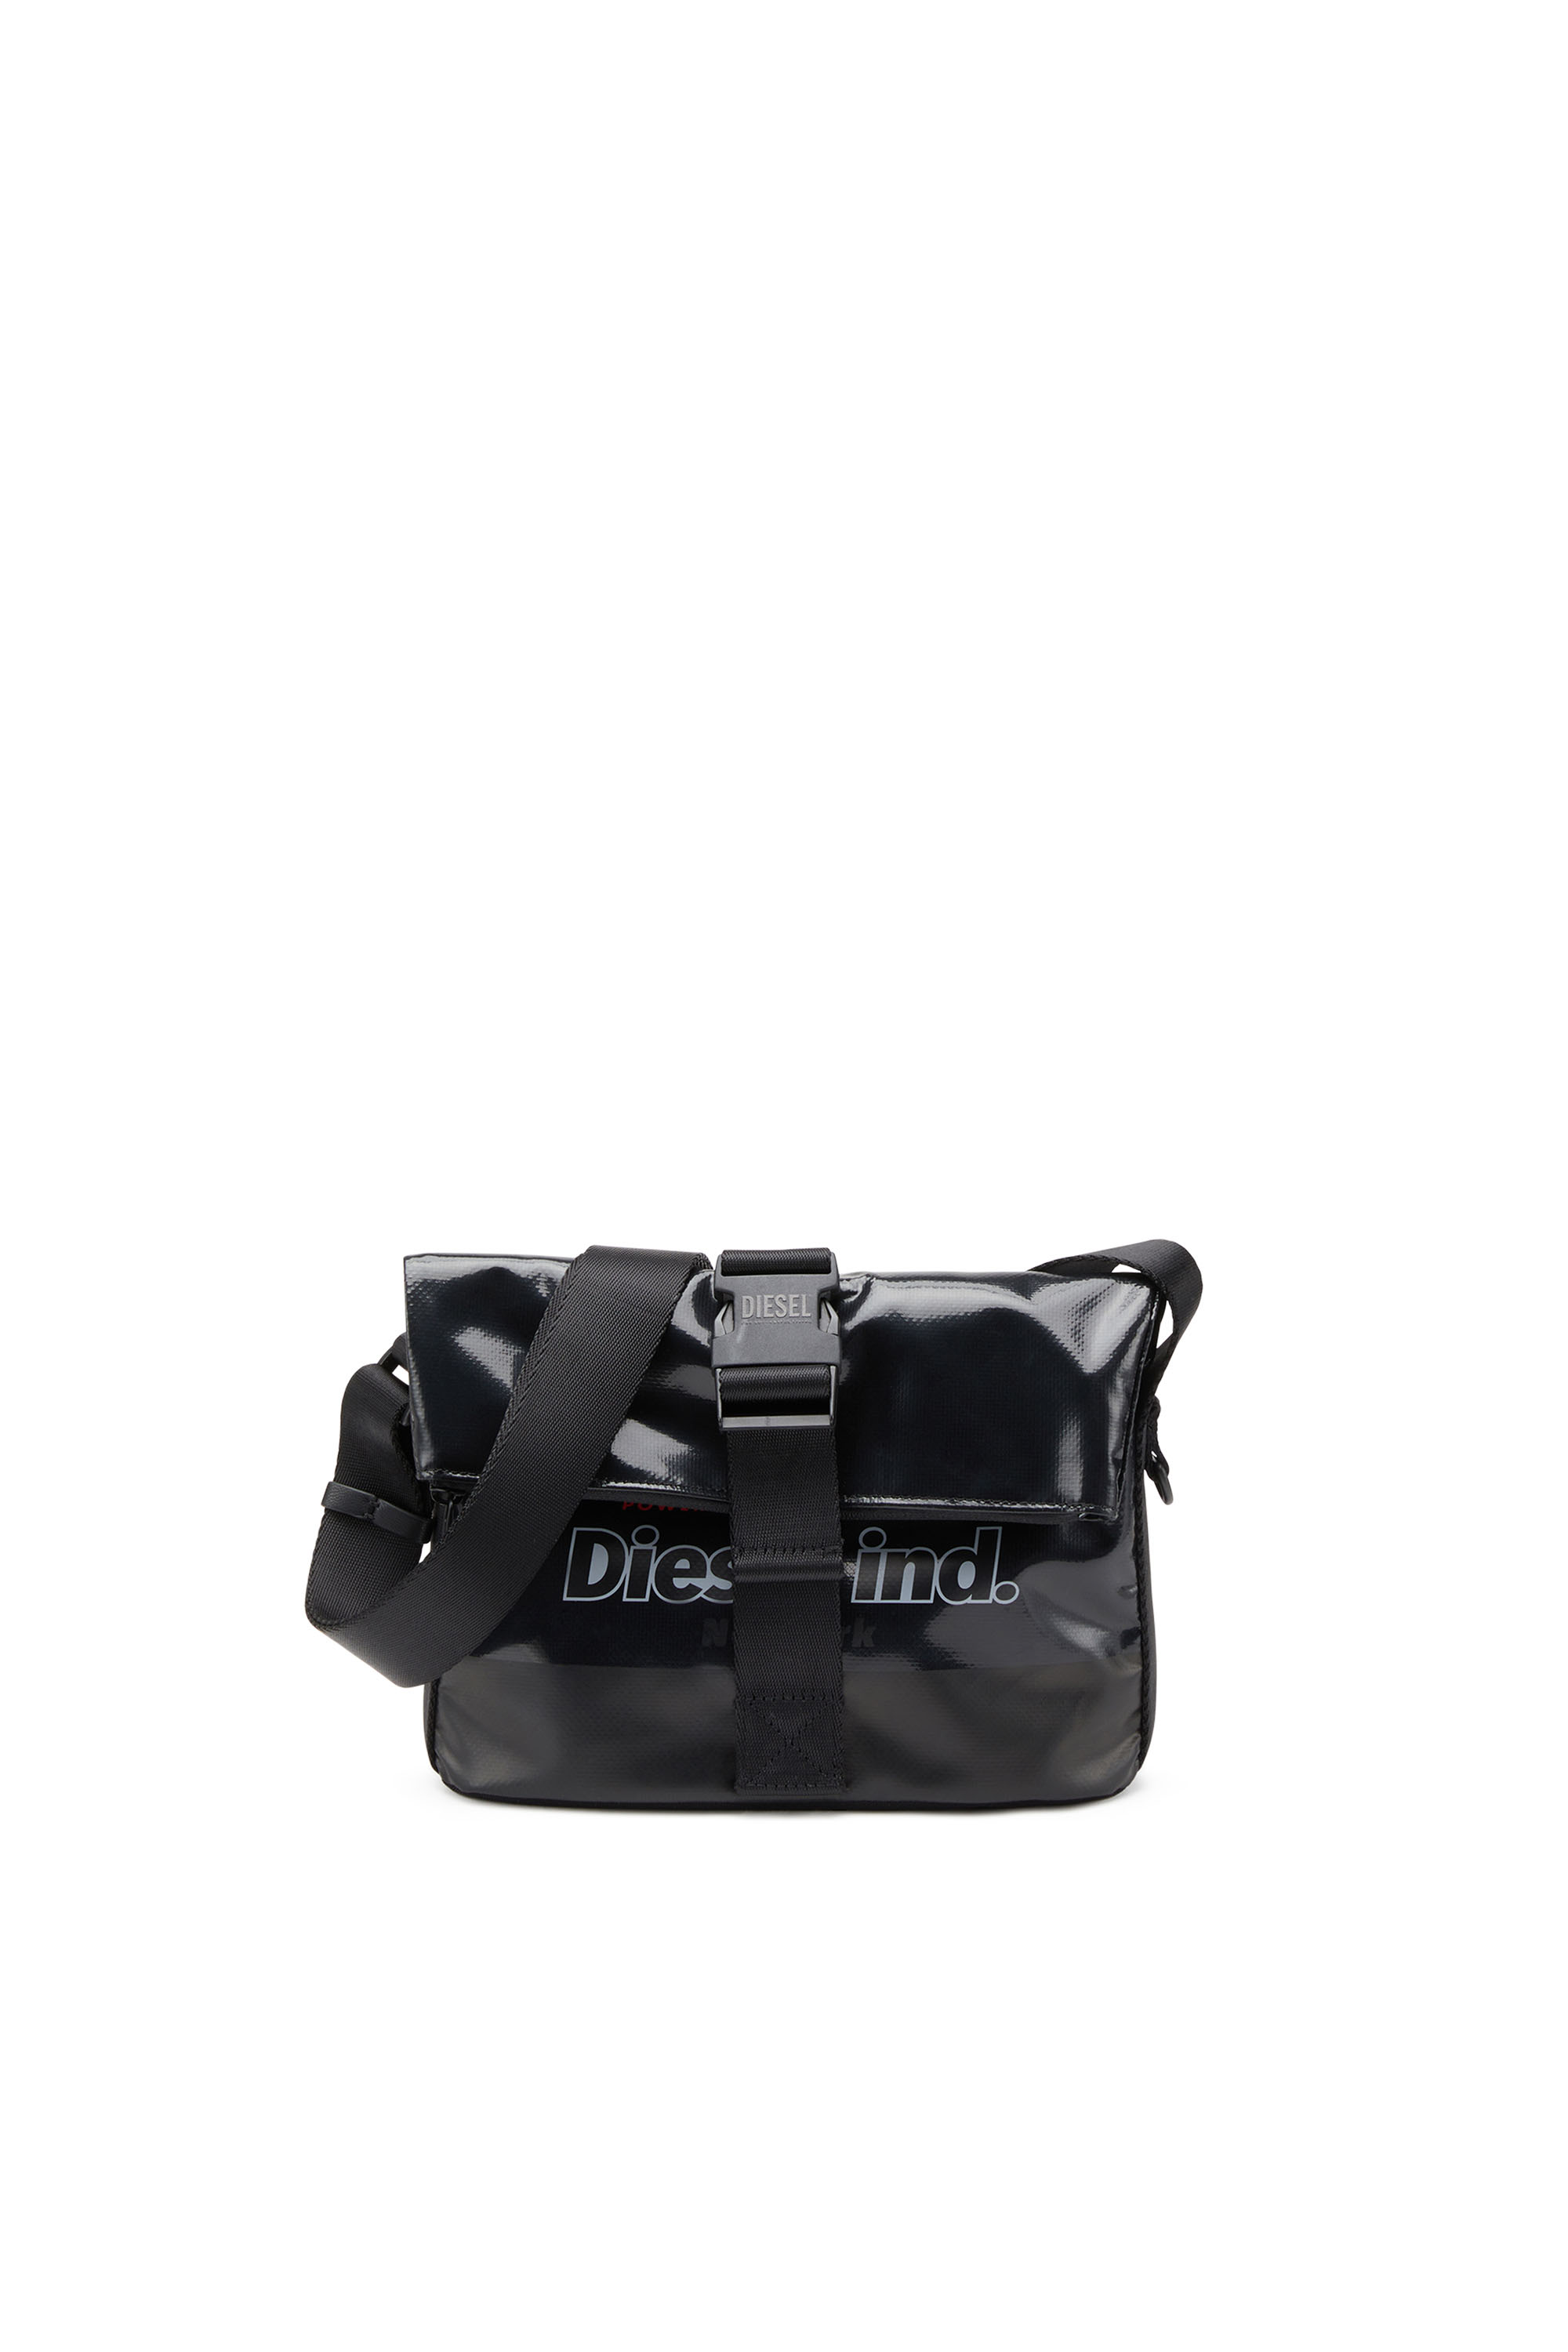 Diesel - TRAP/D SHOULDER BAG S, Black - Image 1